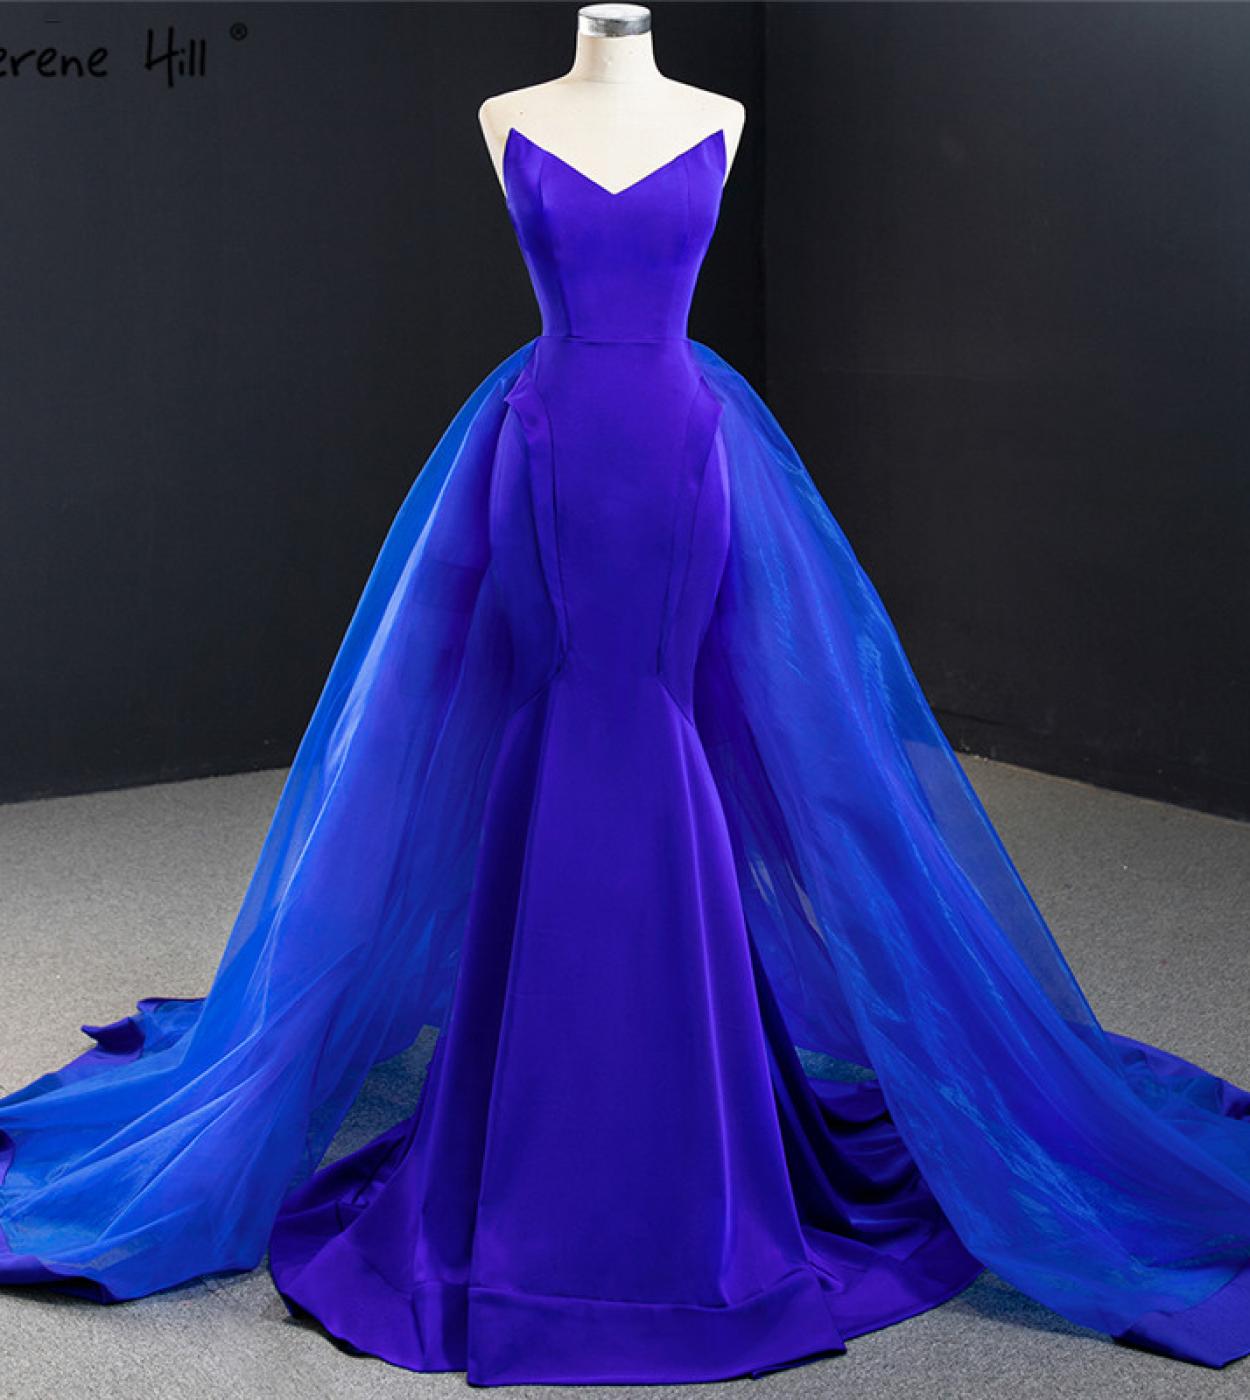 Bleu royal de haute qualité sans manches simples robes de soirée sirène hors épaule robe formelle Serene Hill Hm67117 Evenin